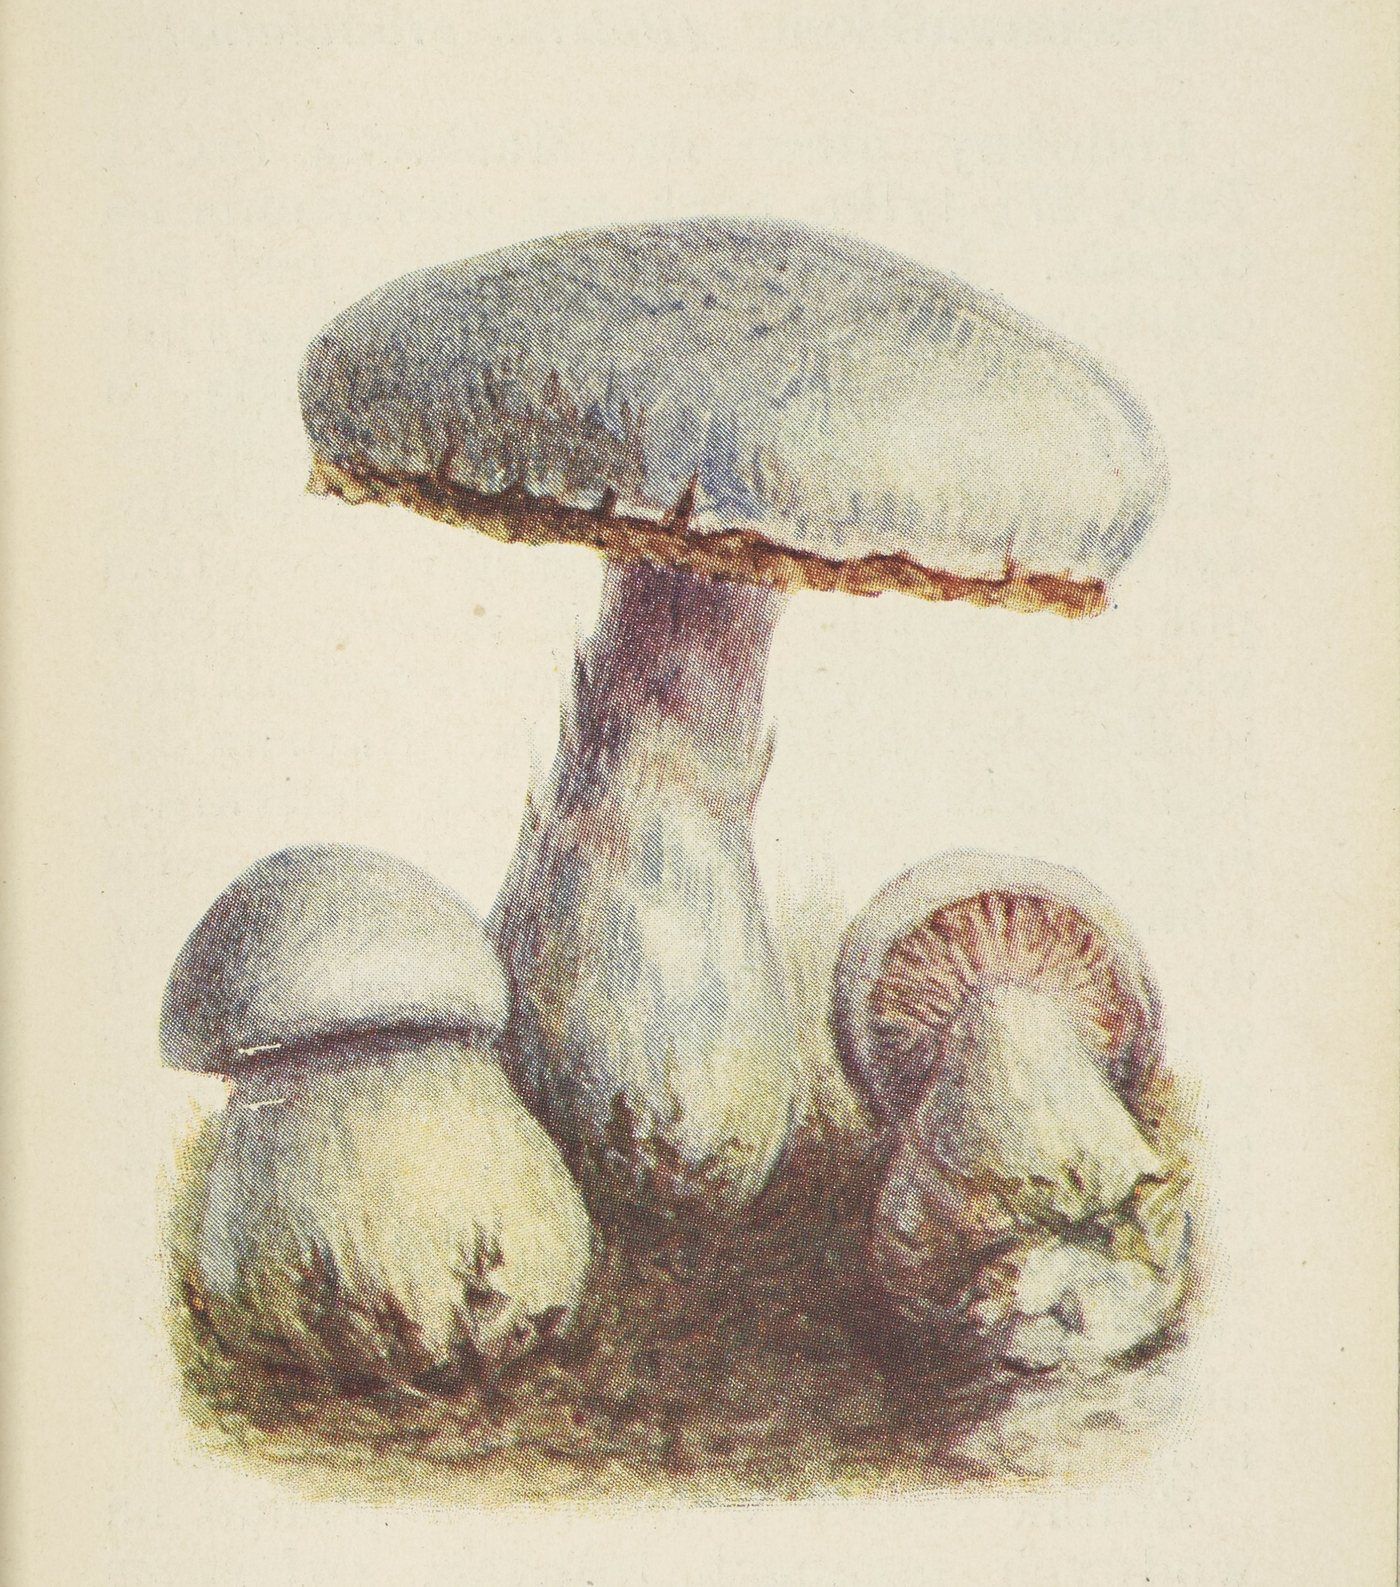 Jeszcze do niedawna nie zdawano sobie spawy z tego, jak niebezpieczne dla zdrowia może być jedzenie tłustocha. Ilustracja z atlasu grzybów wydanego w 1905 roku.